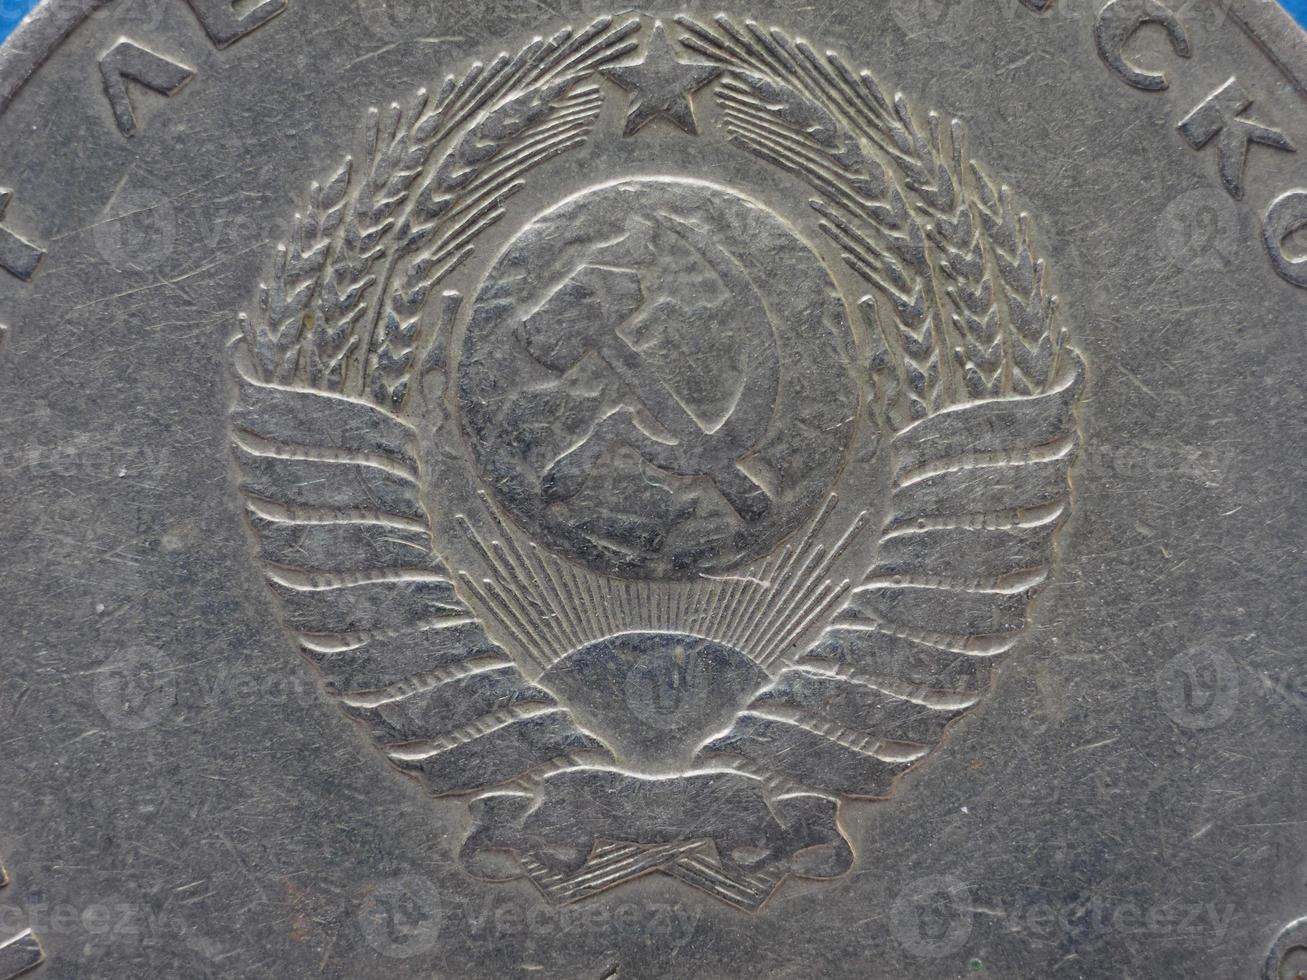 cccp sssr Münze mit Hammer und Sichel foto